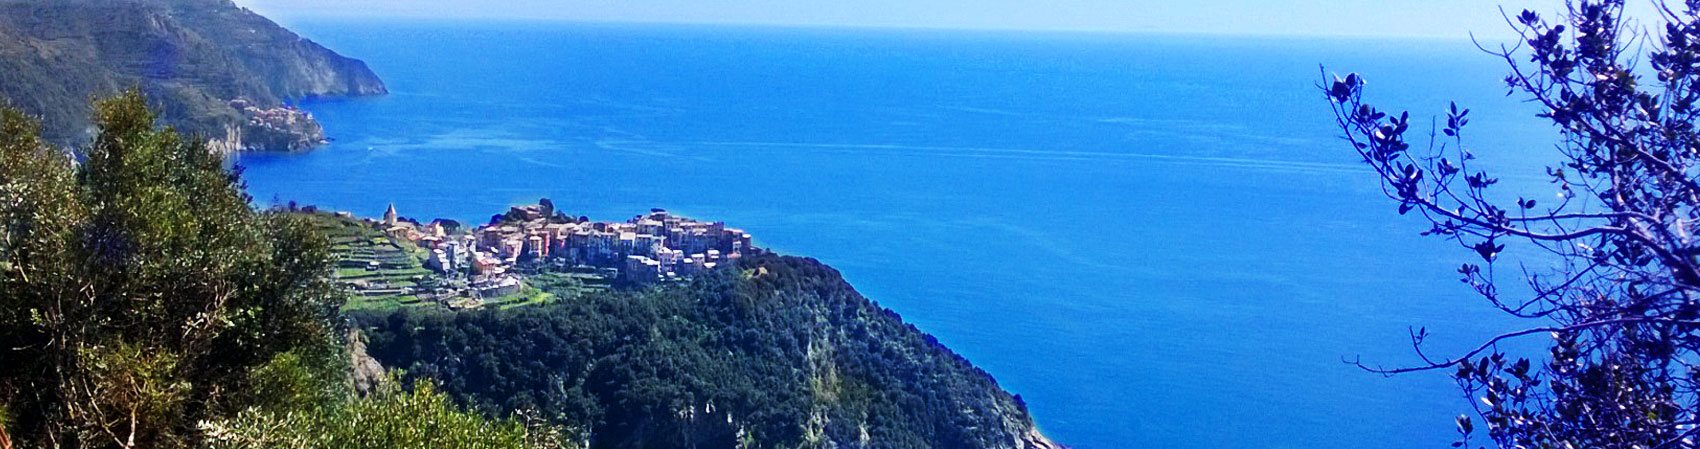 Costa de Toscana: vista del mar en Italia